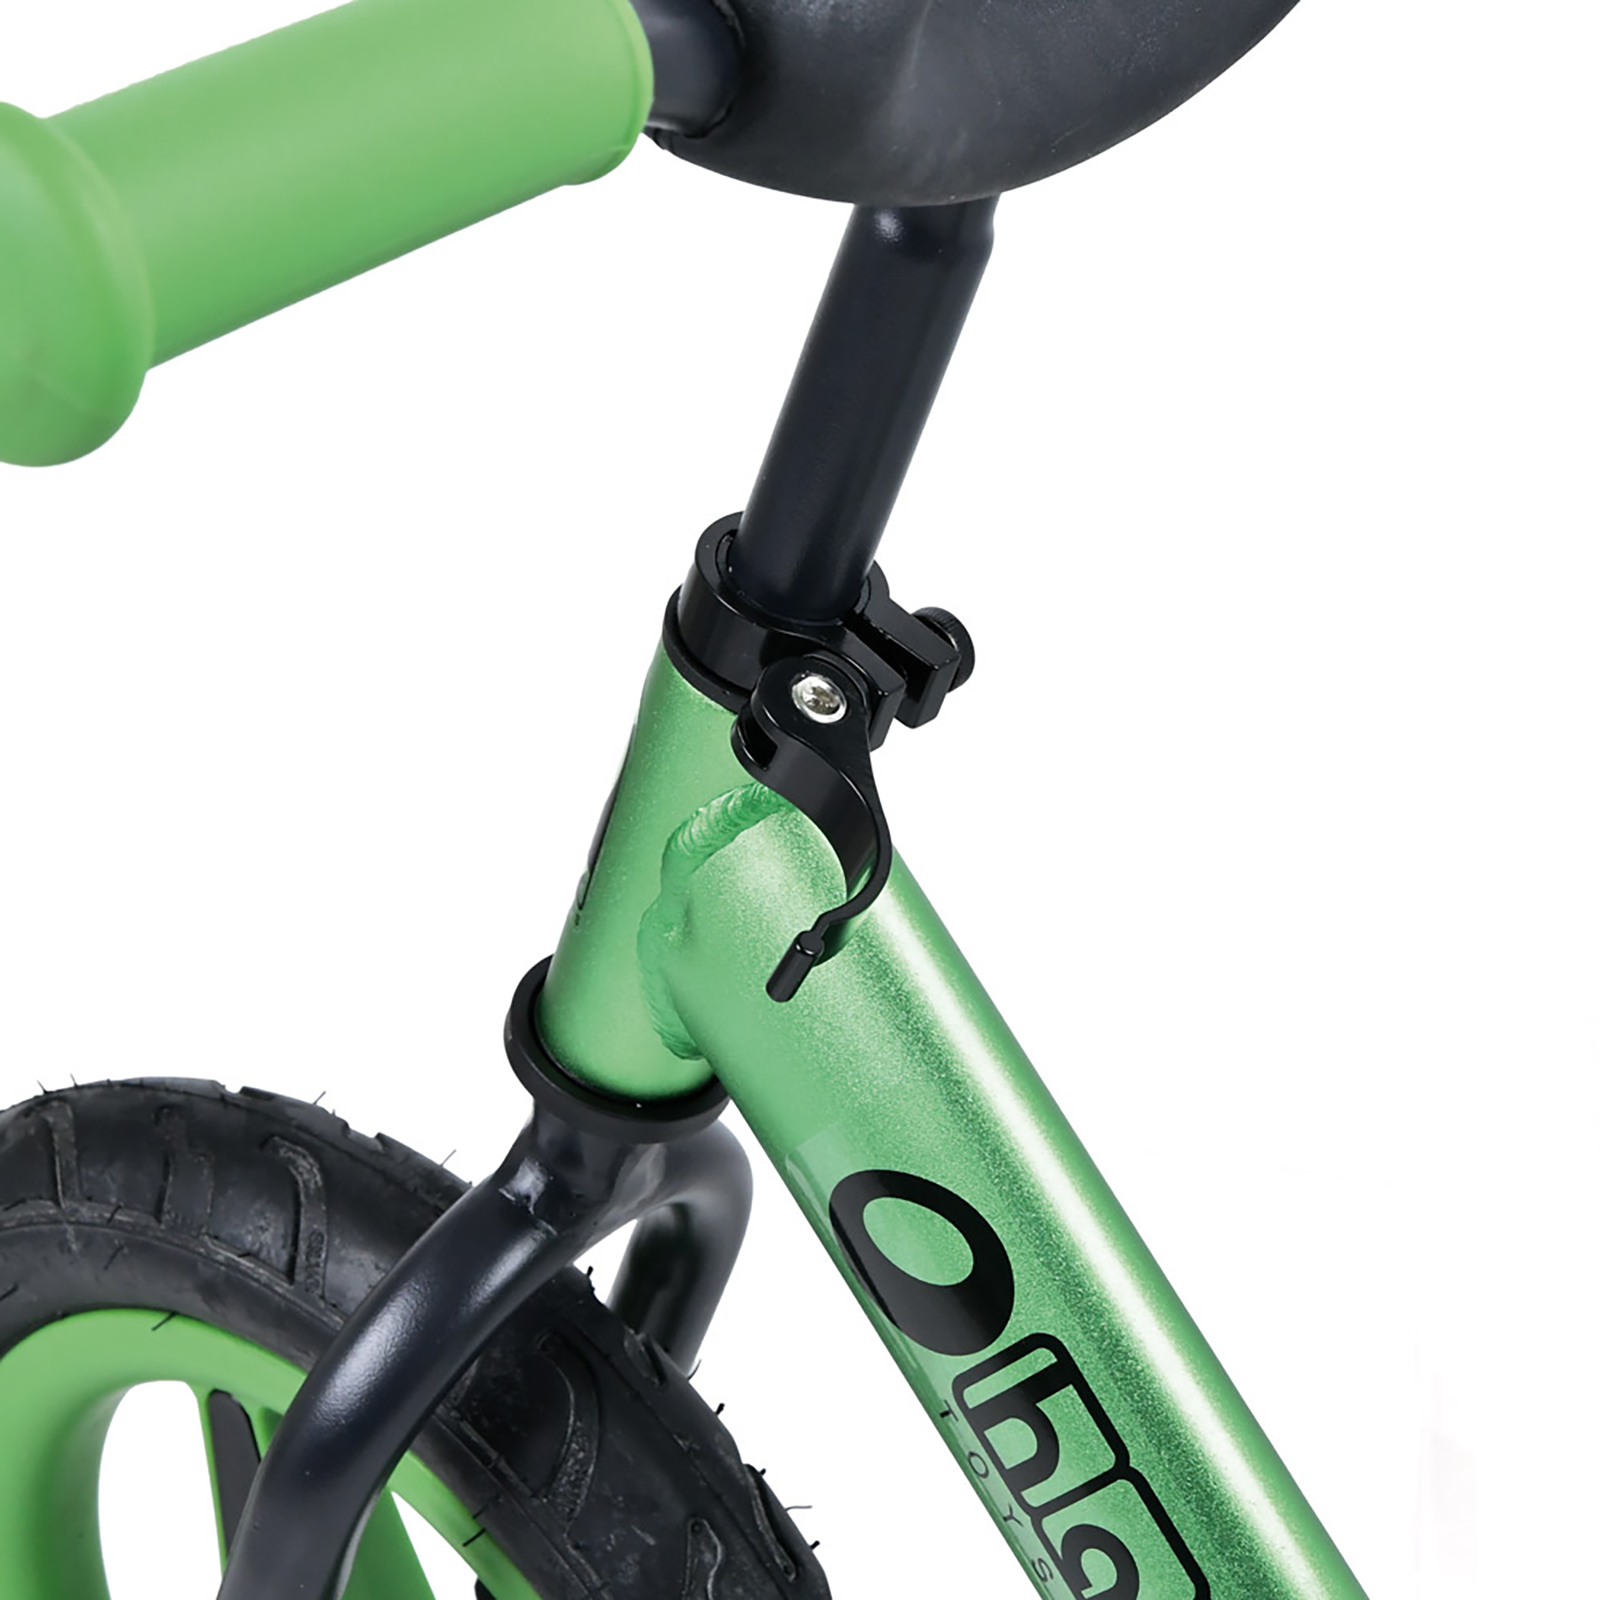 Hauck Aluminum Rider Balance Bike- Green - image 4 of 4